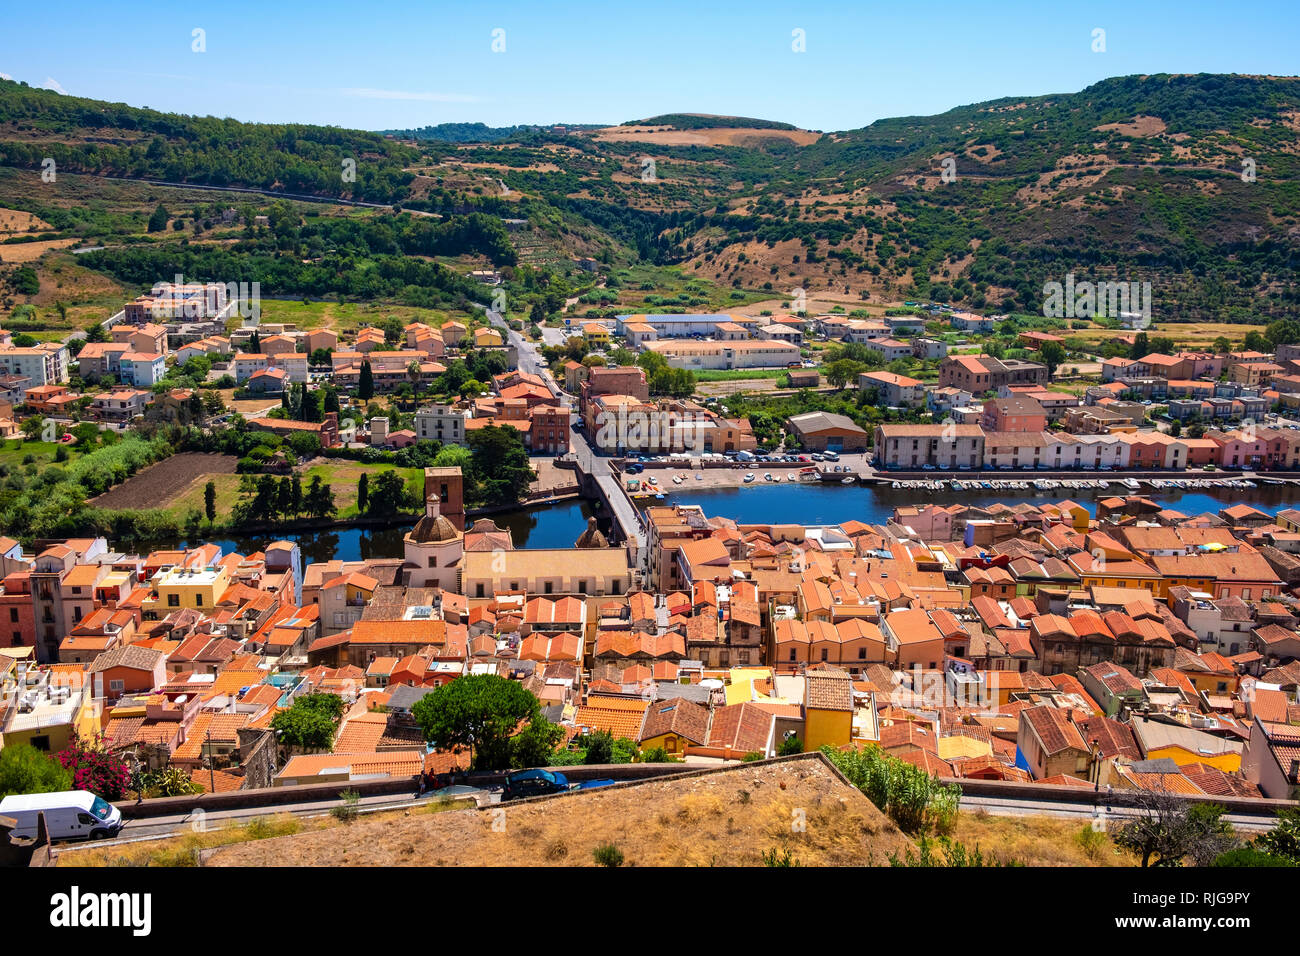 Bosa, Sardinien/Italien - 2018/08/13: Panoramablick auf die Altstadt von Bosa durch den Fluss Temo und die umliegenden Hügel von Malaspina Castle Hill gesehen Stockfoto